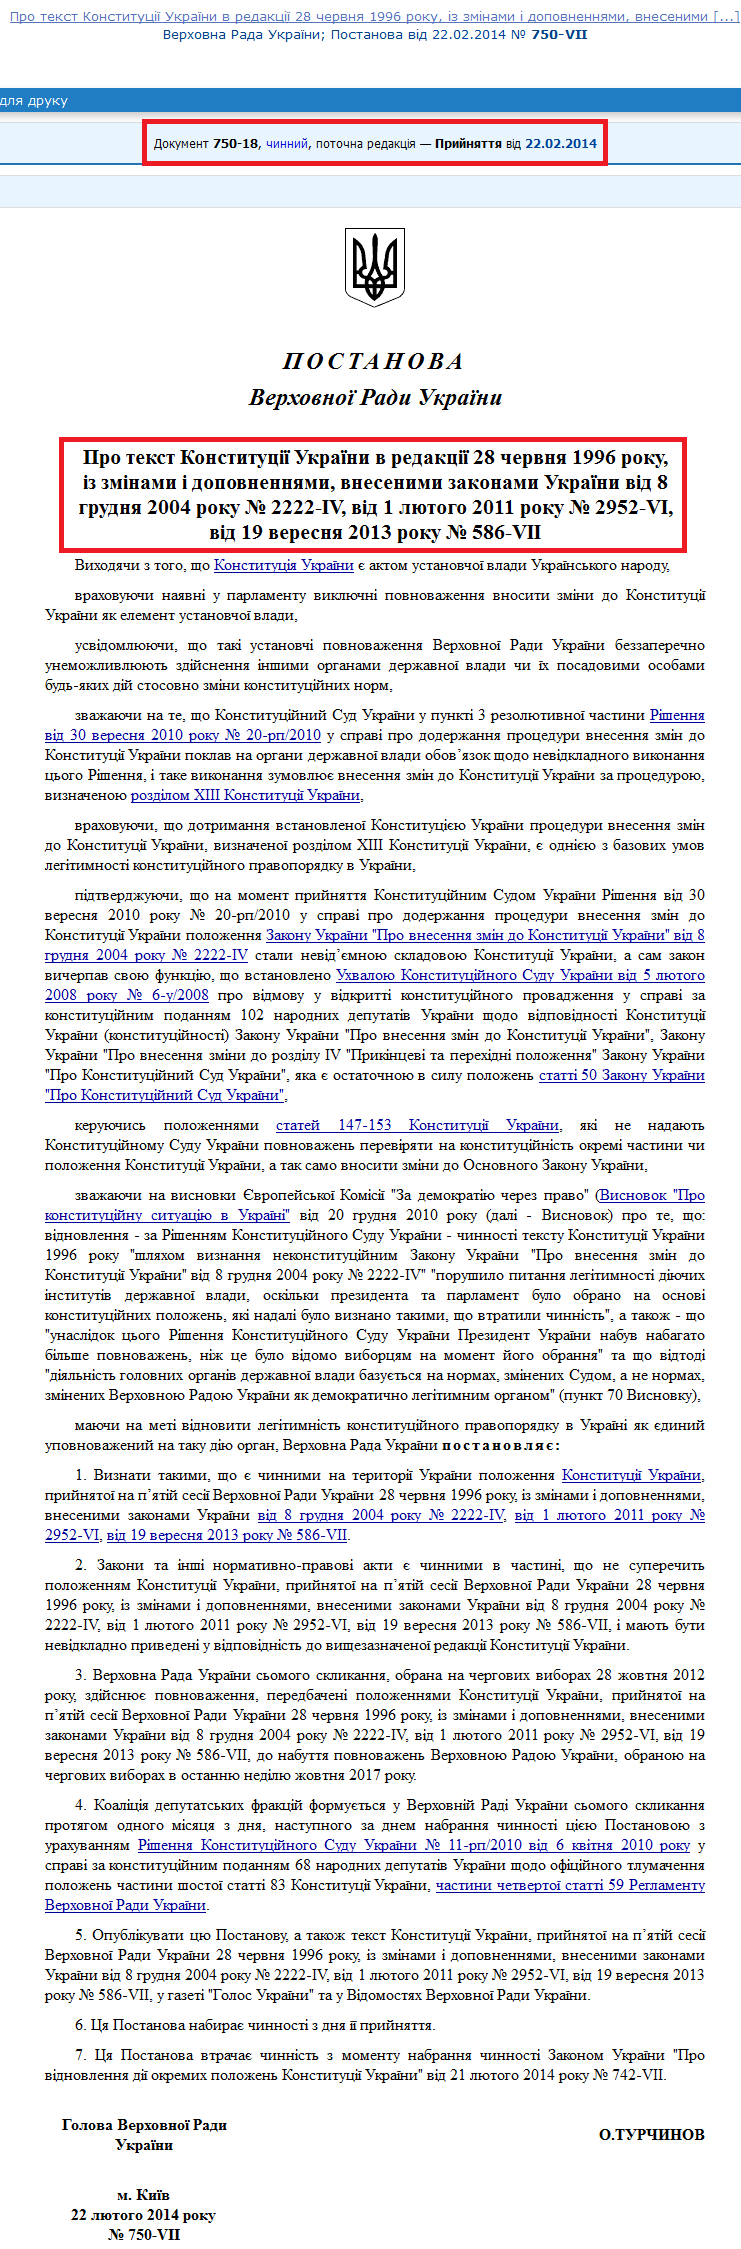 http://zakon2.rada.gov.ua/laws/show/750-18